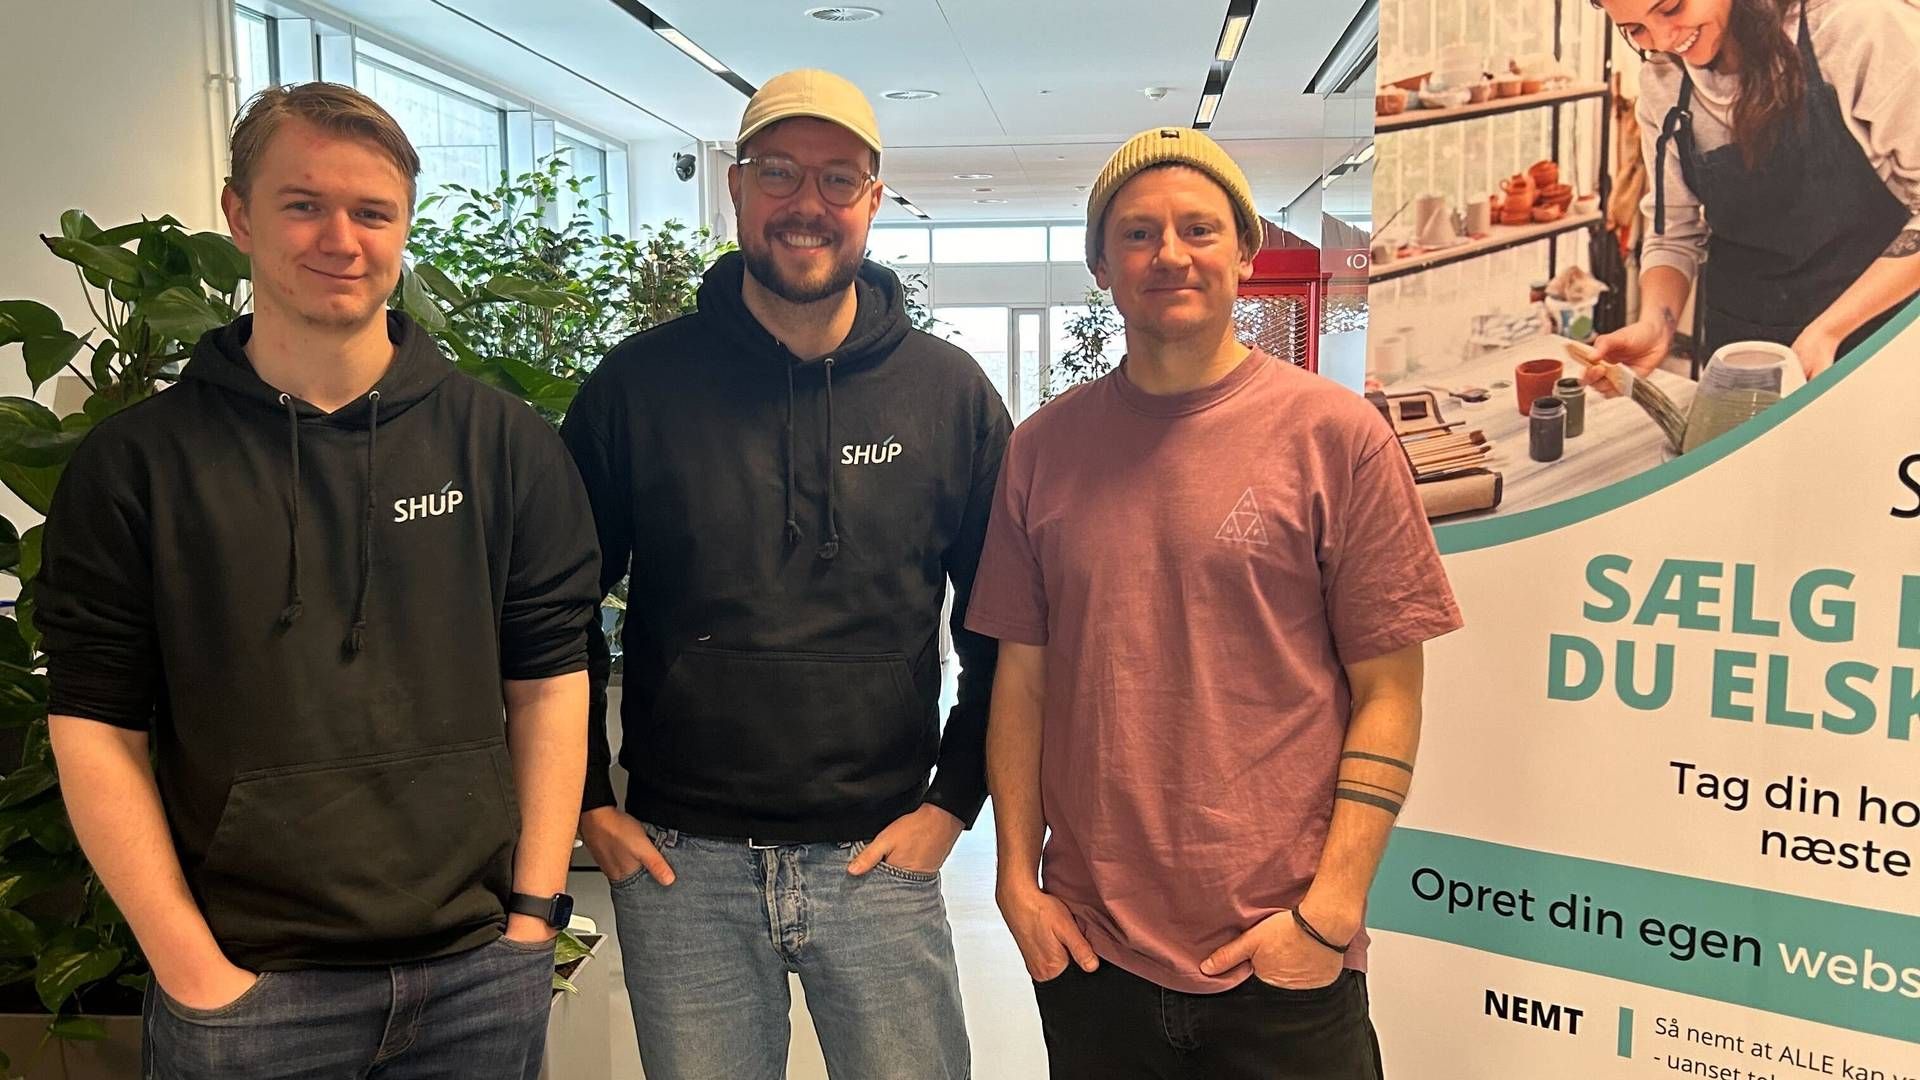 Shup er stiftet af Kristian Falkenberg (til højre). Her står han ved siden af Mathias Spiegelhauer, udvikler (til venstre), og Mikkel Birlø, marketingansvarlig (i midten). | Foto: PR